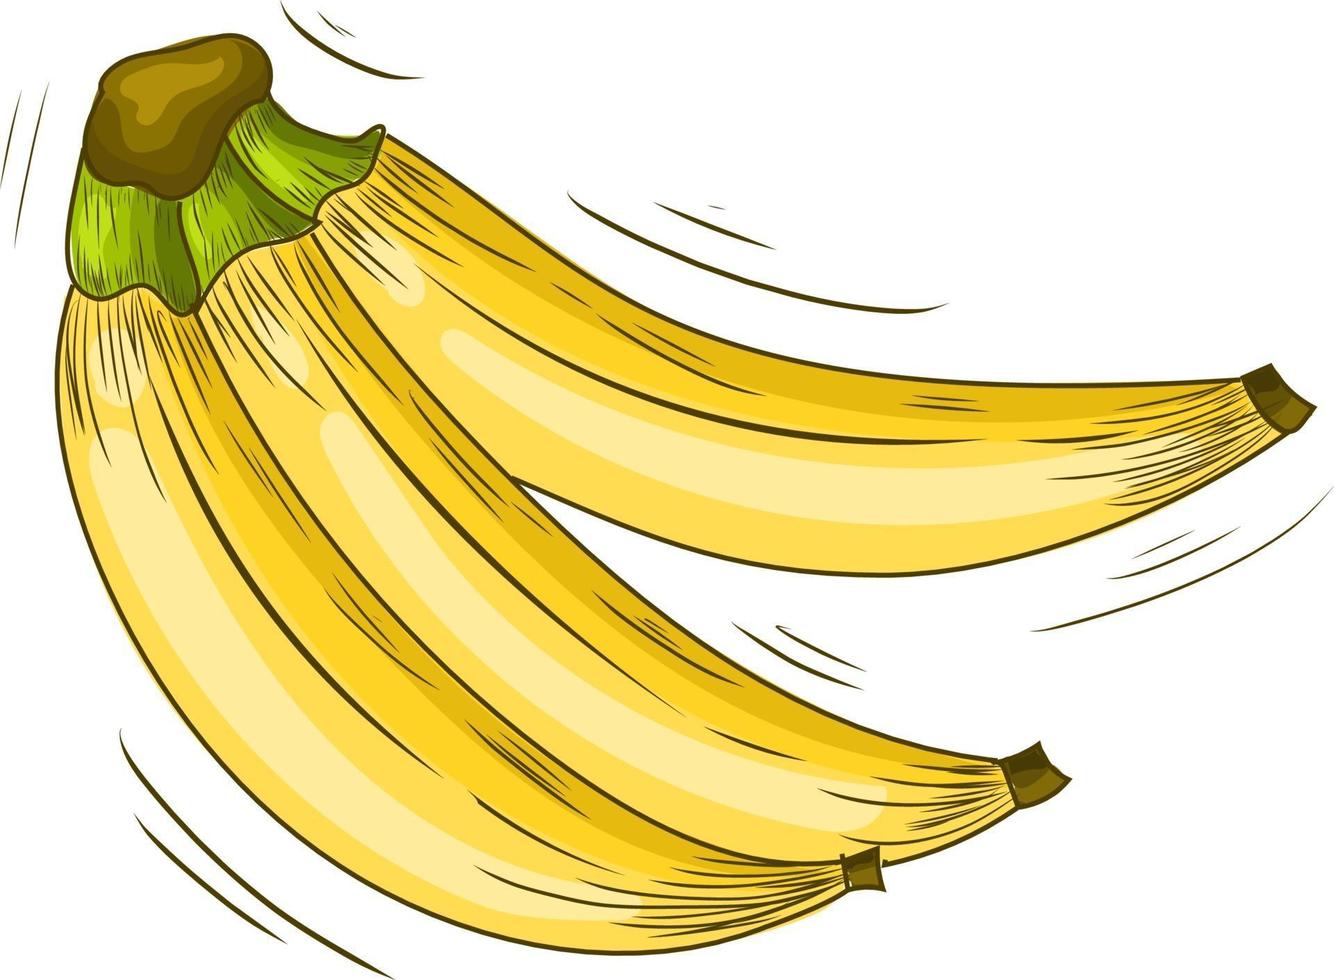 stile di schizzo dell'illustrazione della banana. banana disegnata a mano. banana gialla vettore